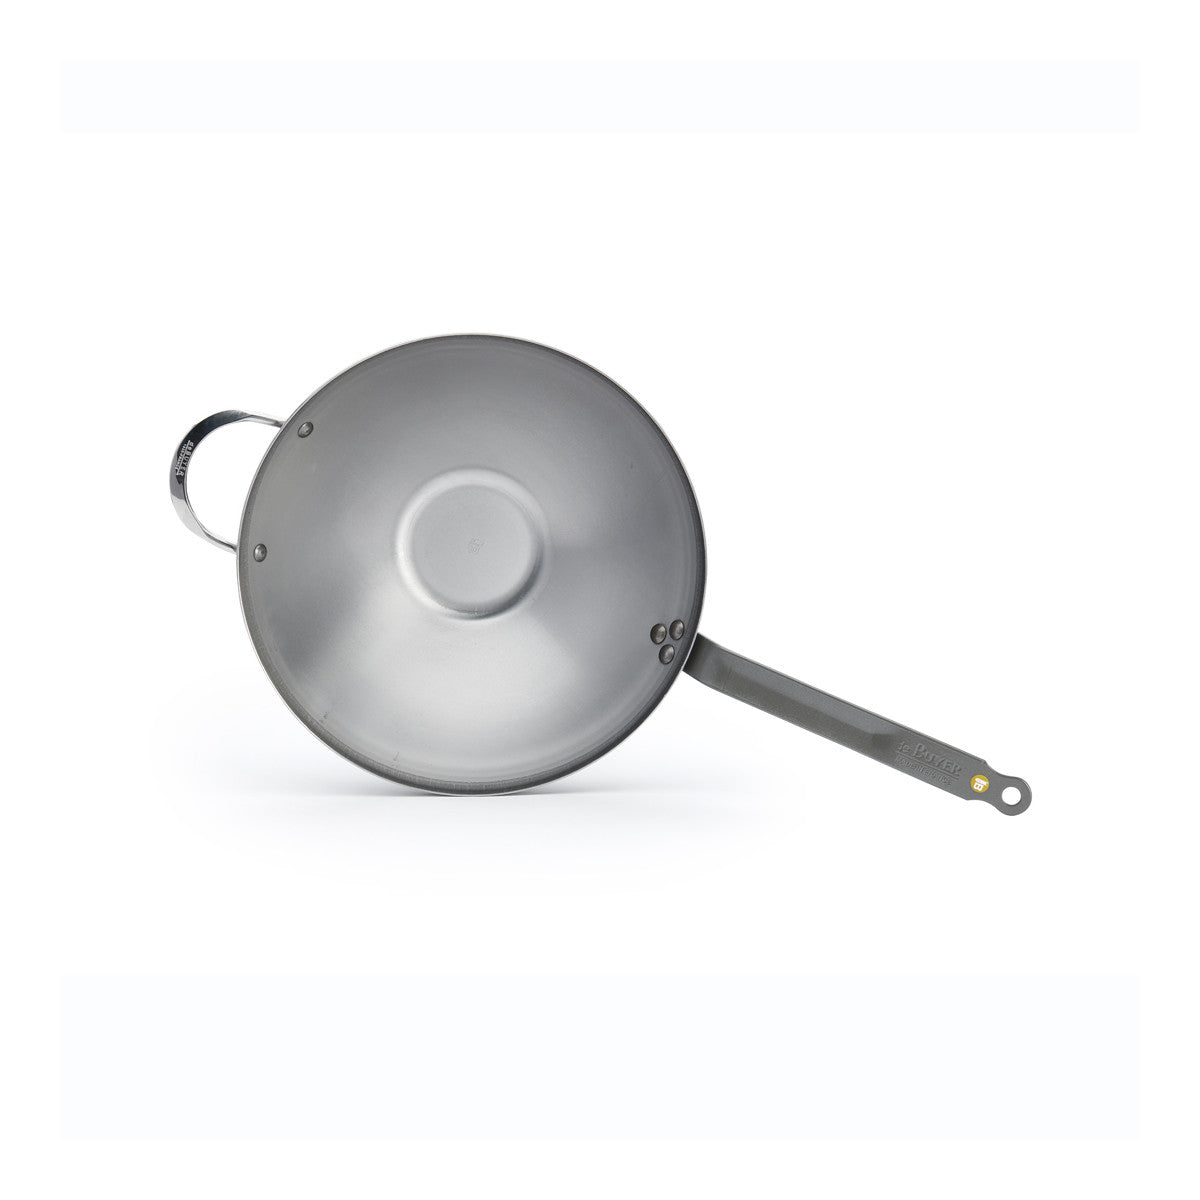 De Buyer Mineral B carbon steel wok, one handle